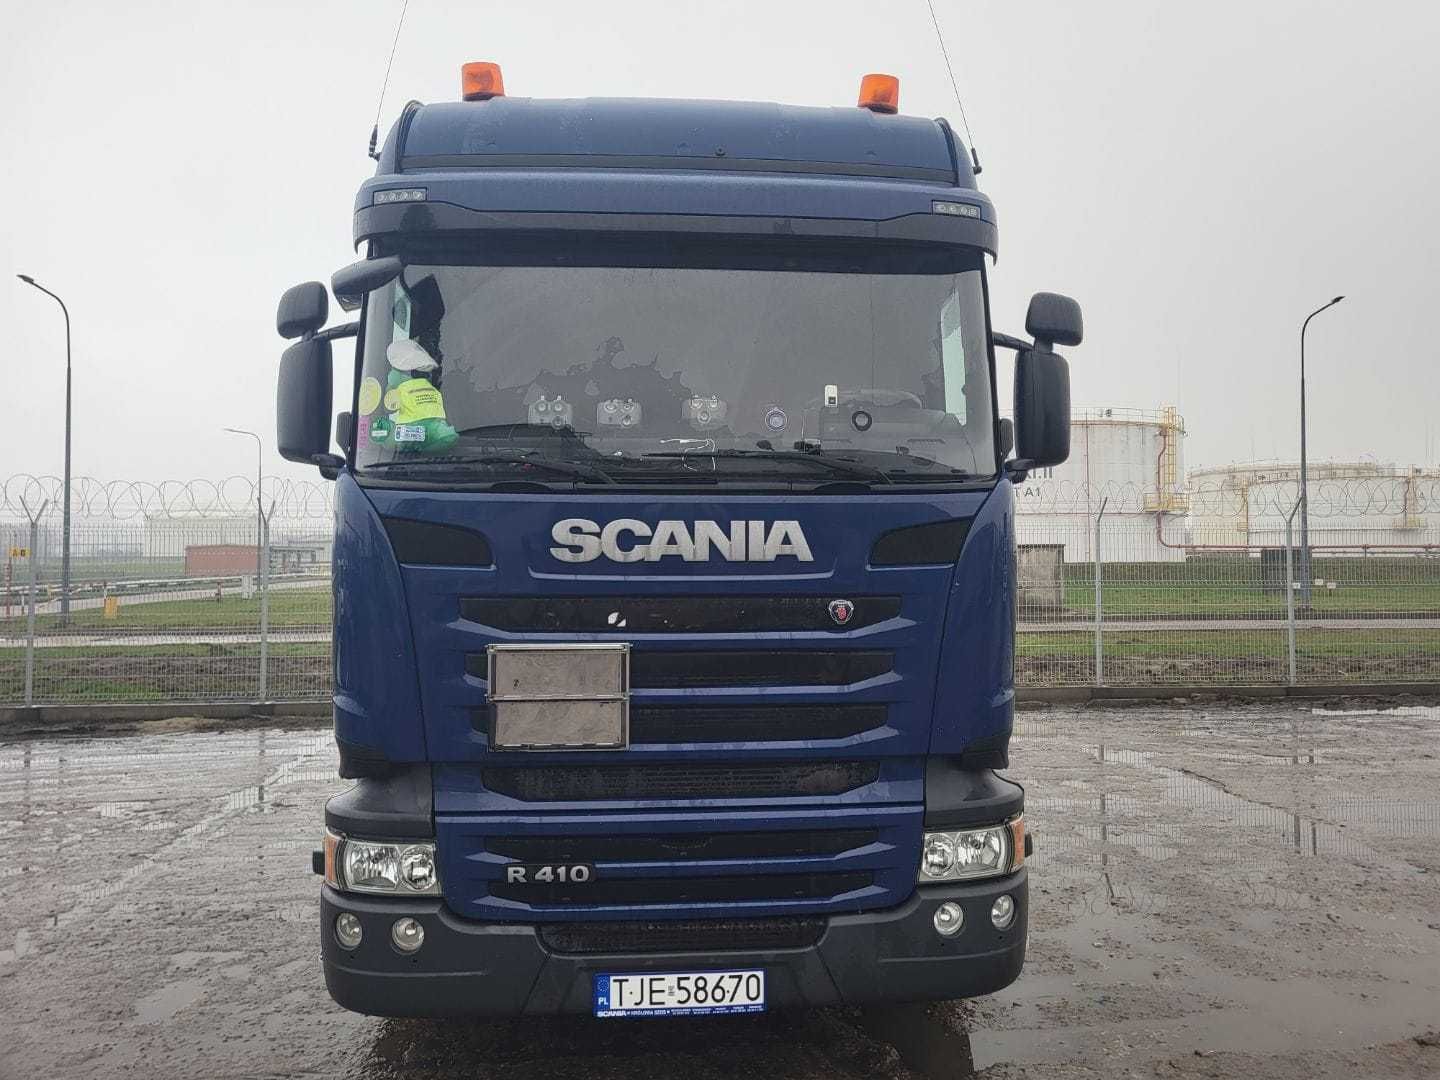 Scania ADR R410 Fl Ox At